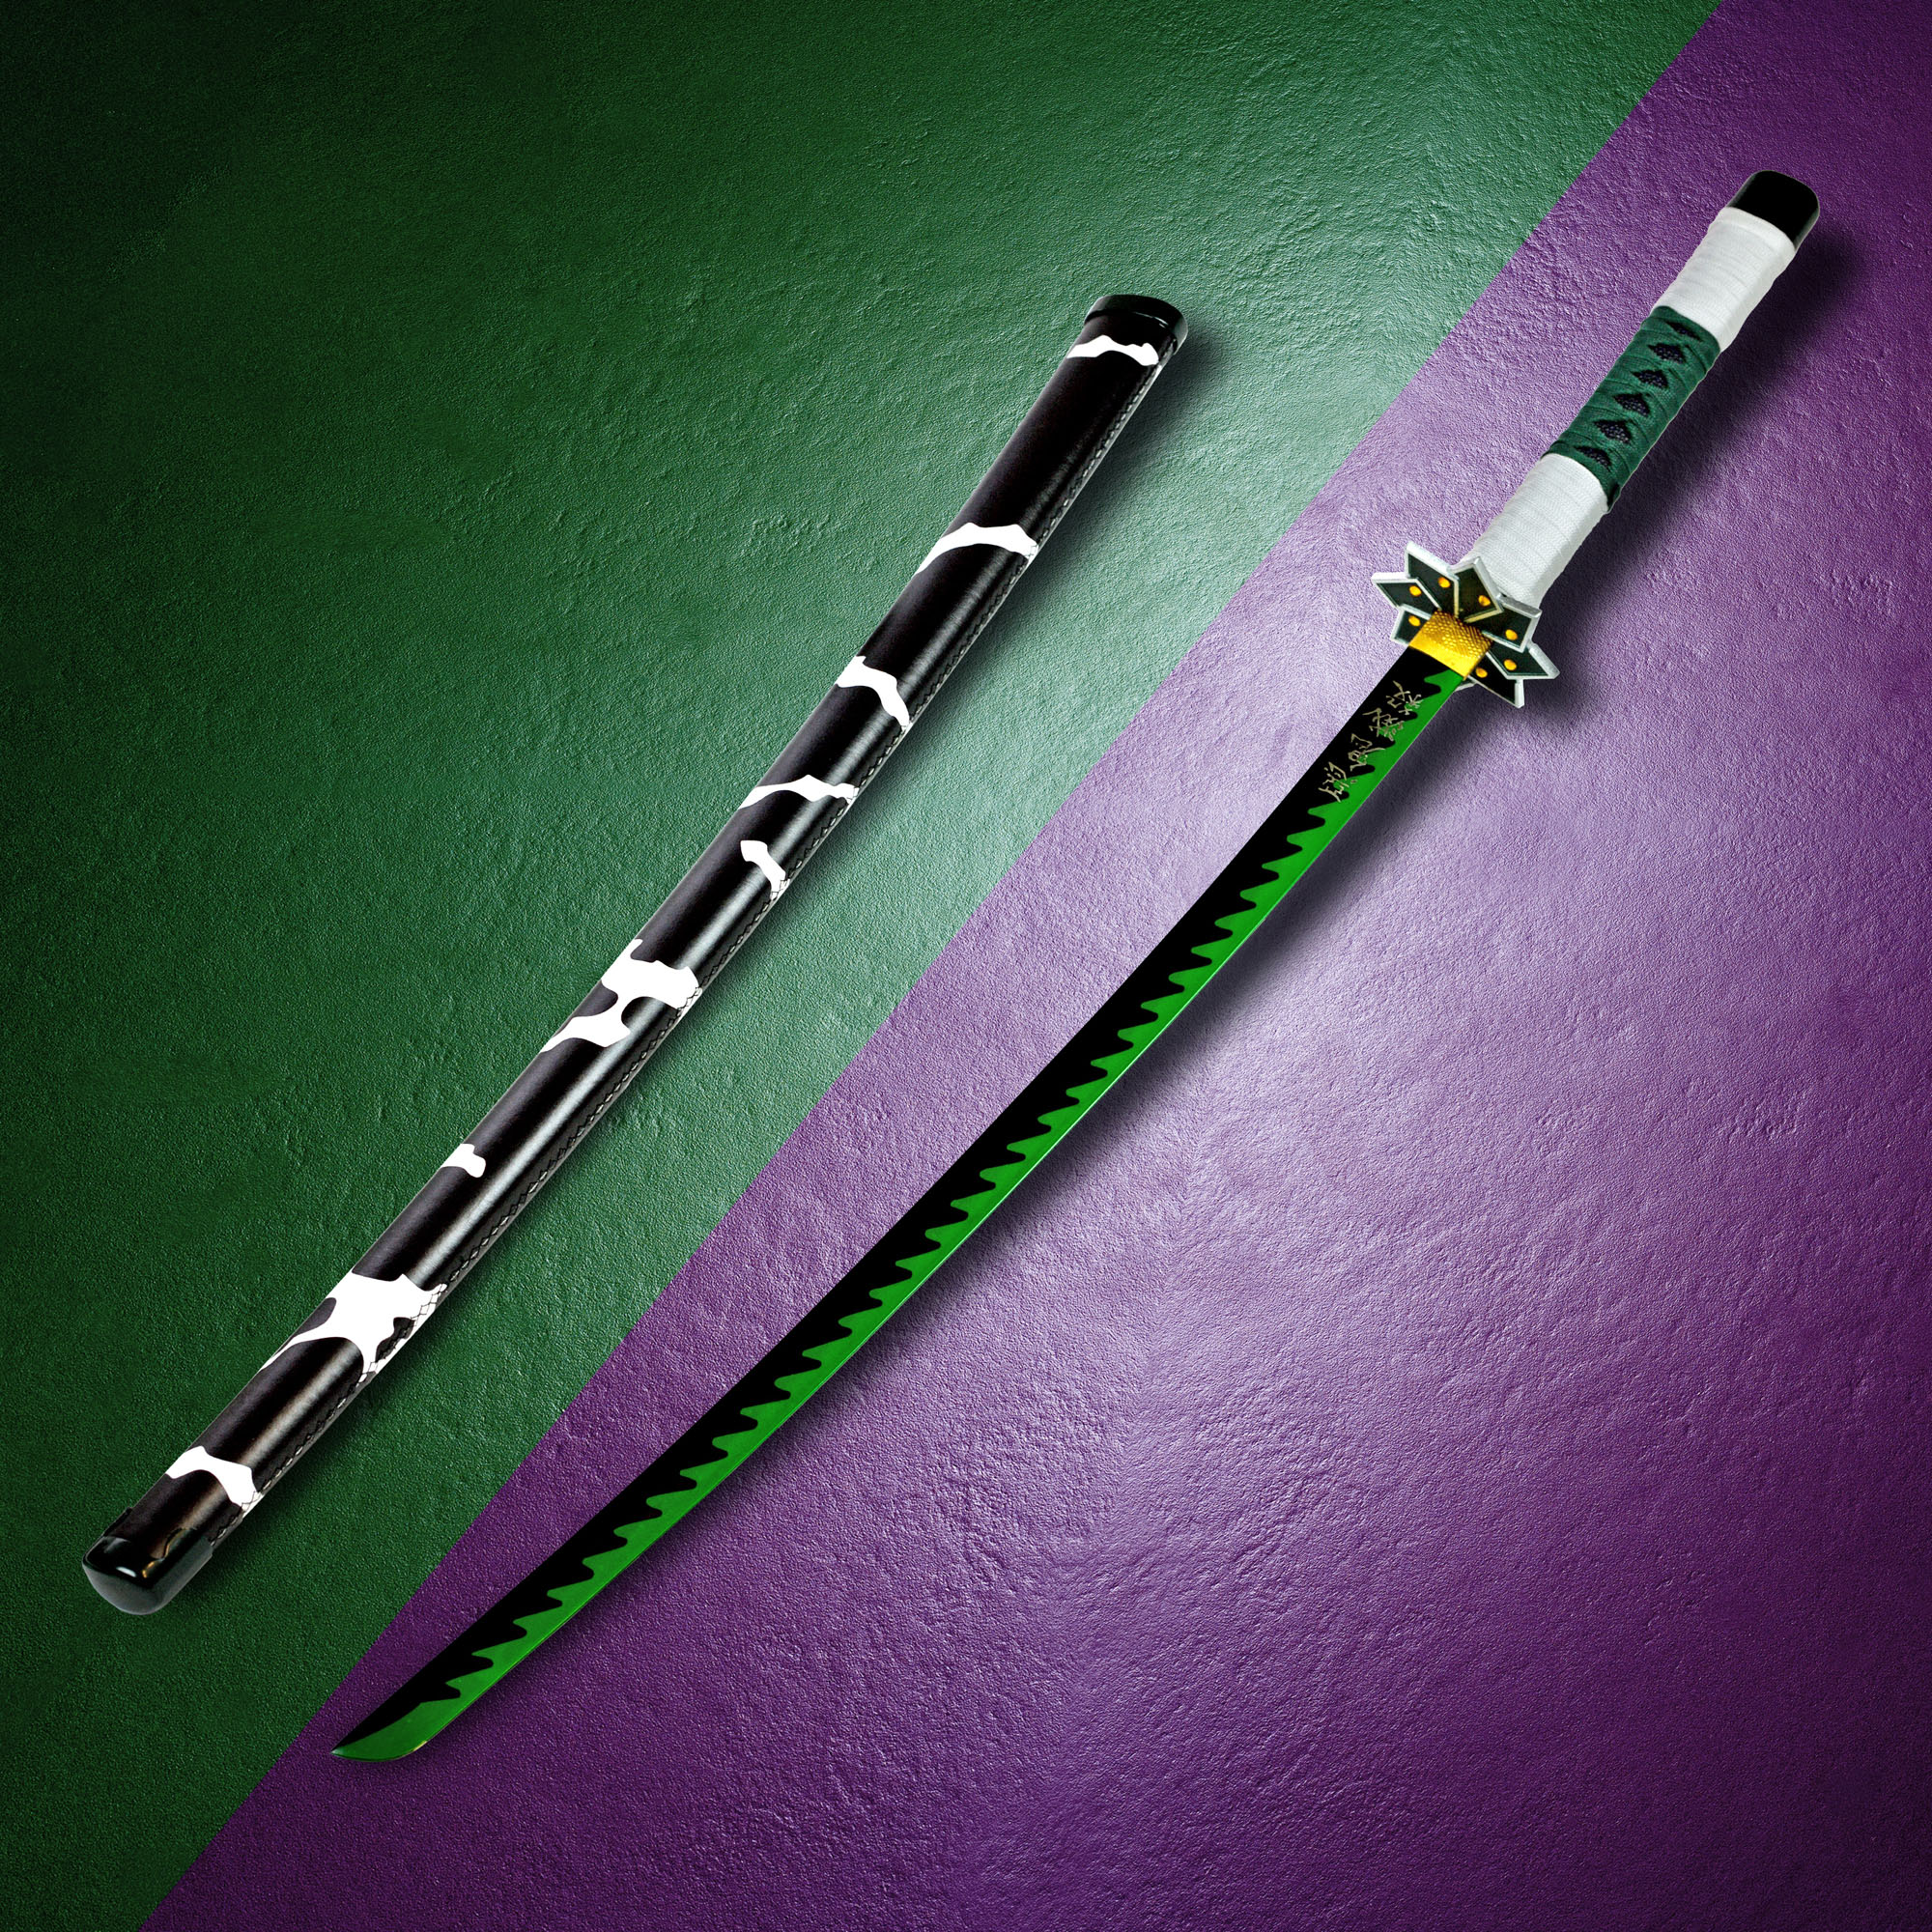 Demon Slayer: Kimetsu no Yaiba - Shinazugawa Sanemi sword